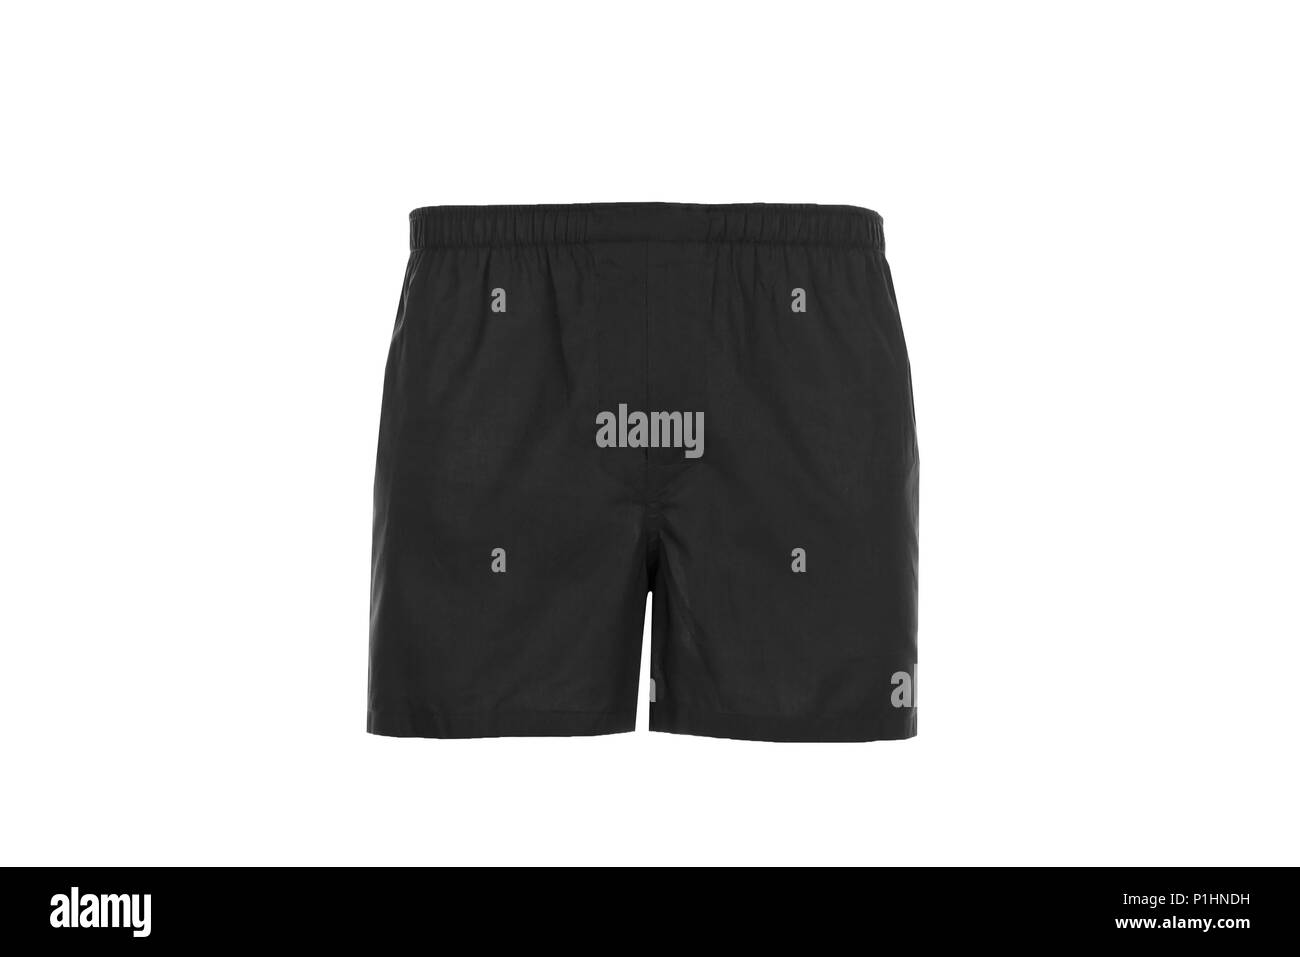 Männer, Shorts. Schwarze Kurze Hose in heller Farbe Stockfotografie - Alamy